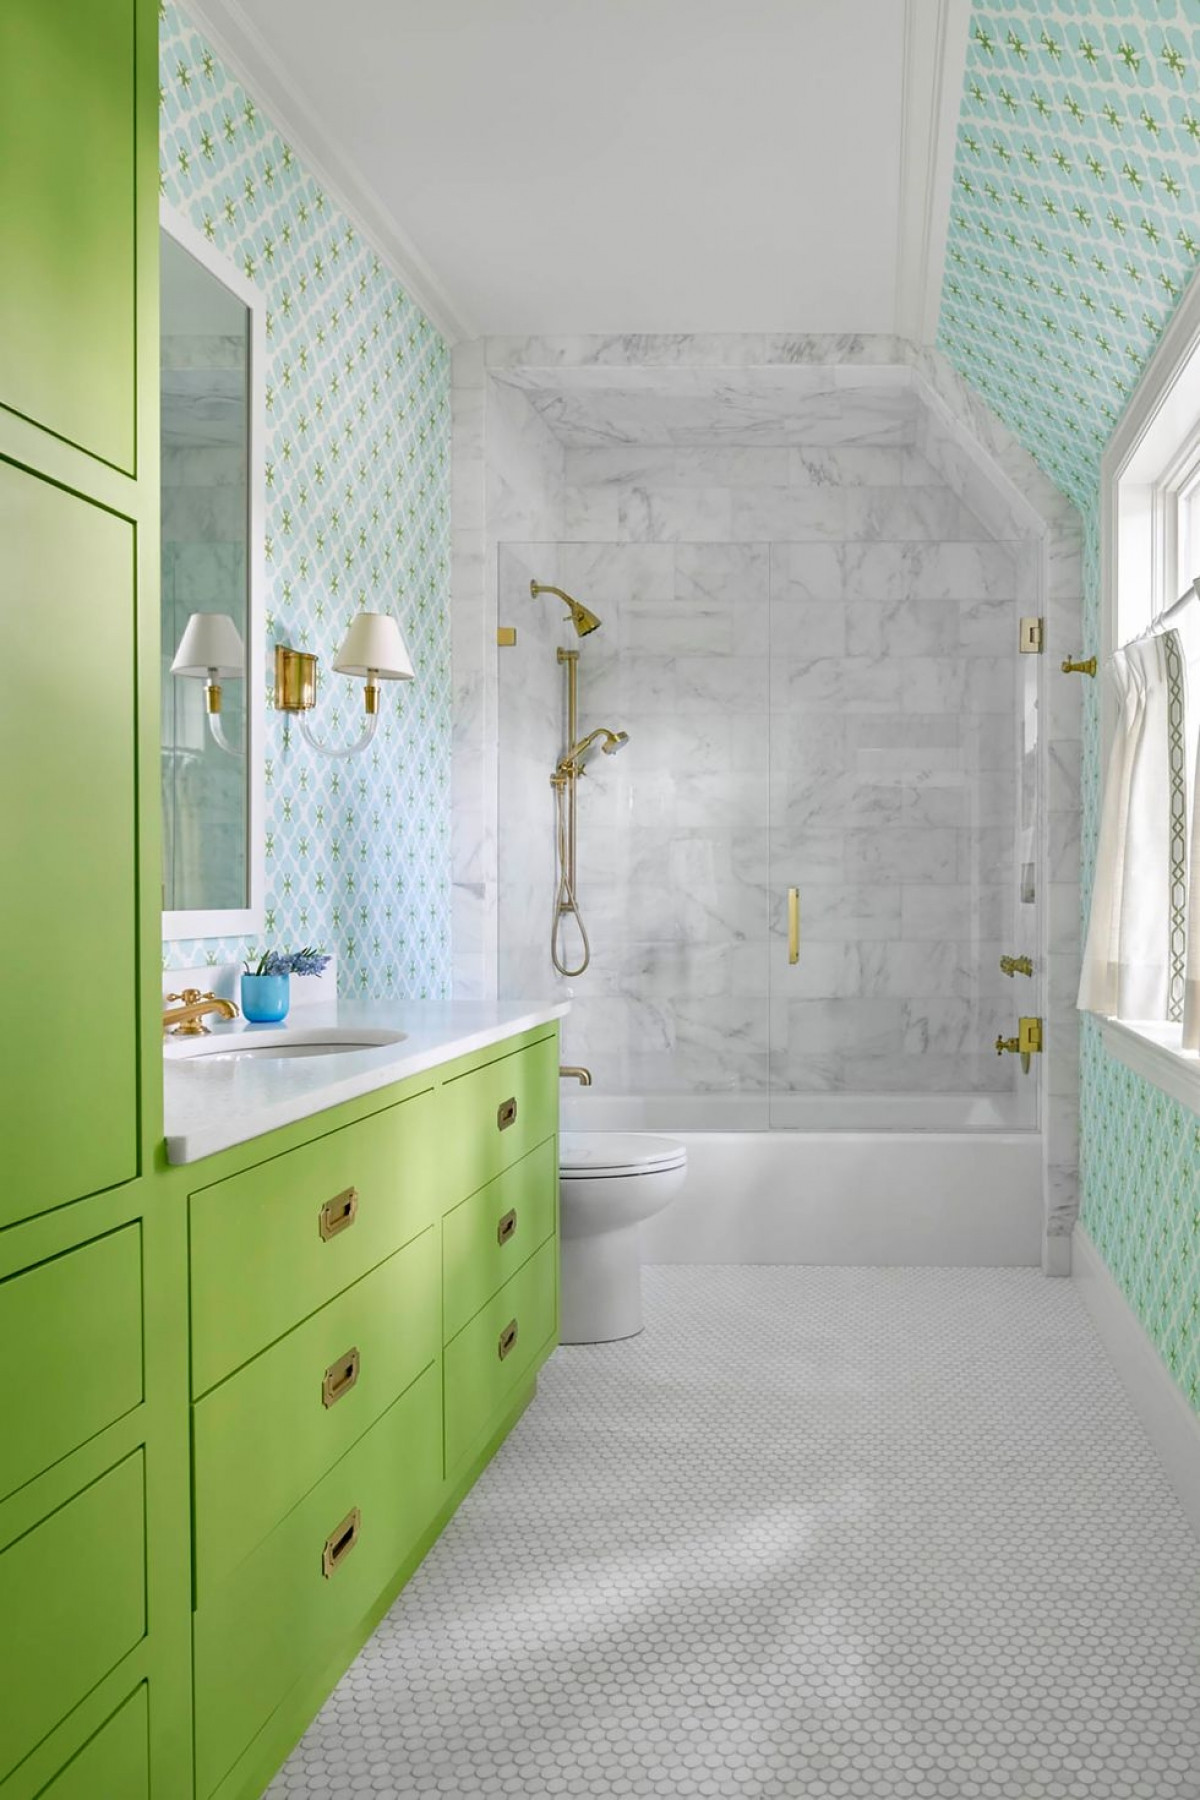 Cùng với gạch xám tinh xảo, nhà thiết kế đã thêm các điểm nhấn màu xanh lá cây và xanh dương tràn đầy năng lượng trong thiết kế phòng tắm